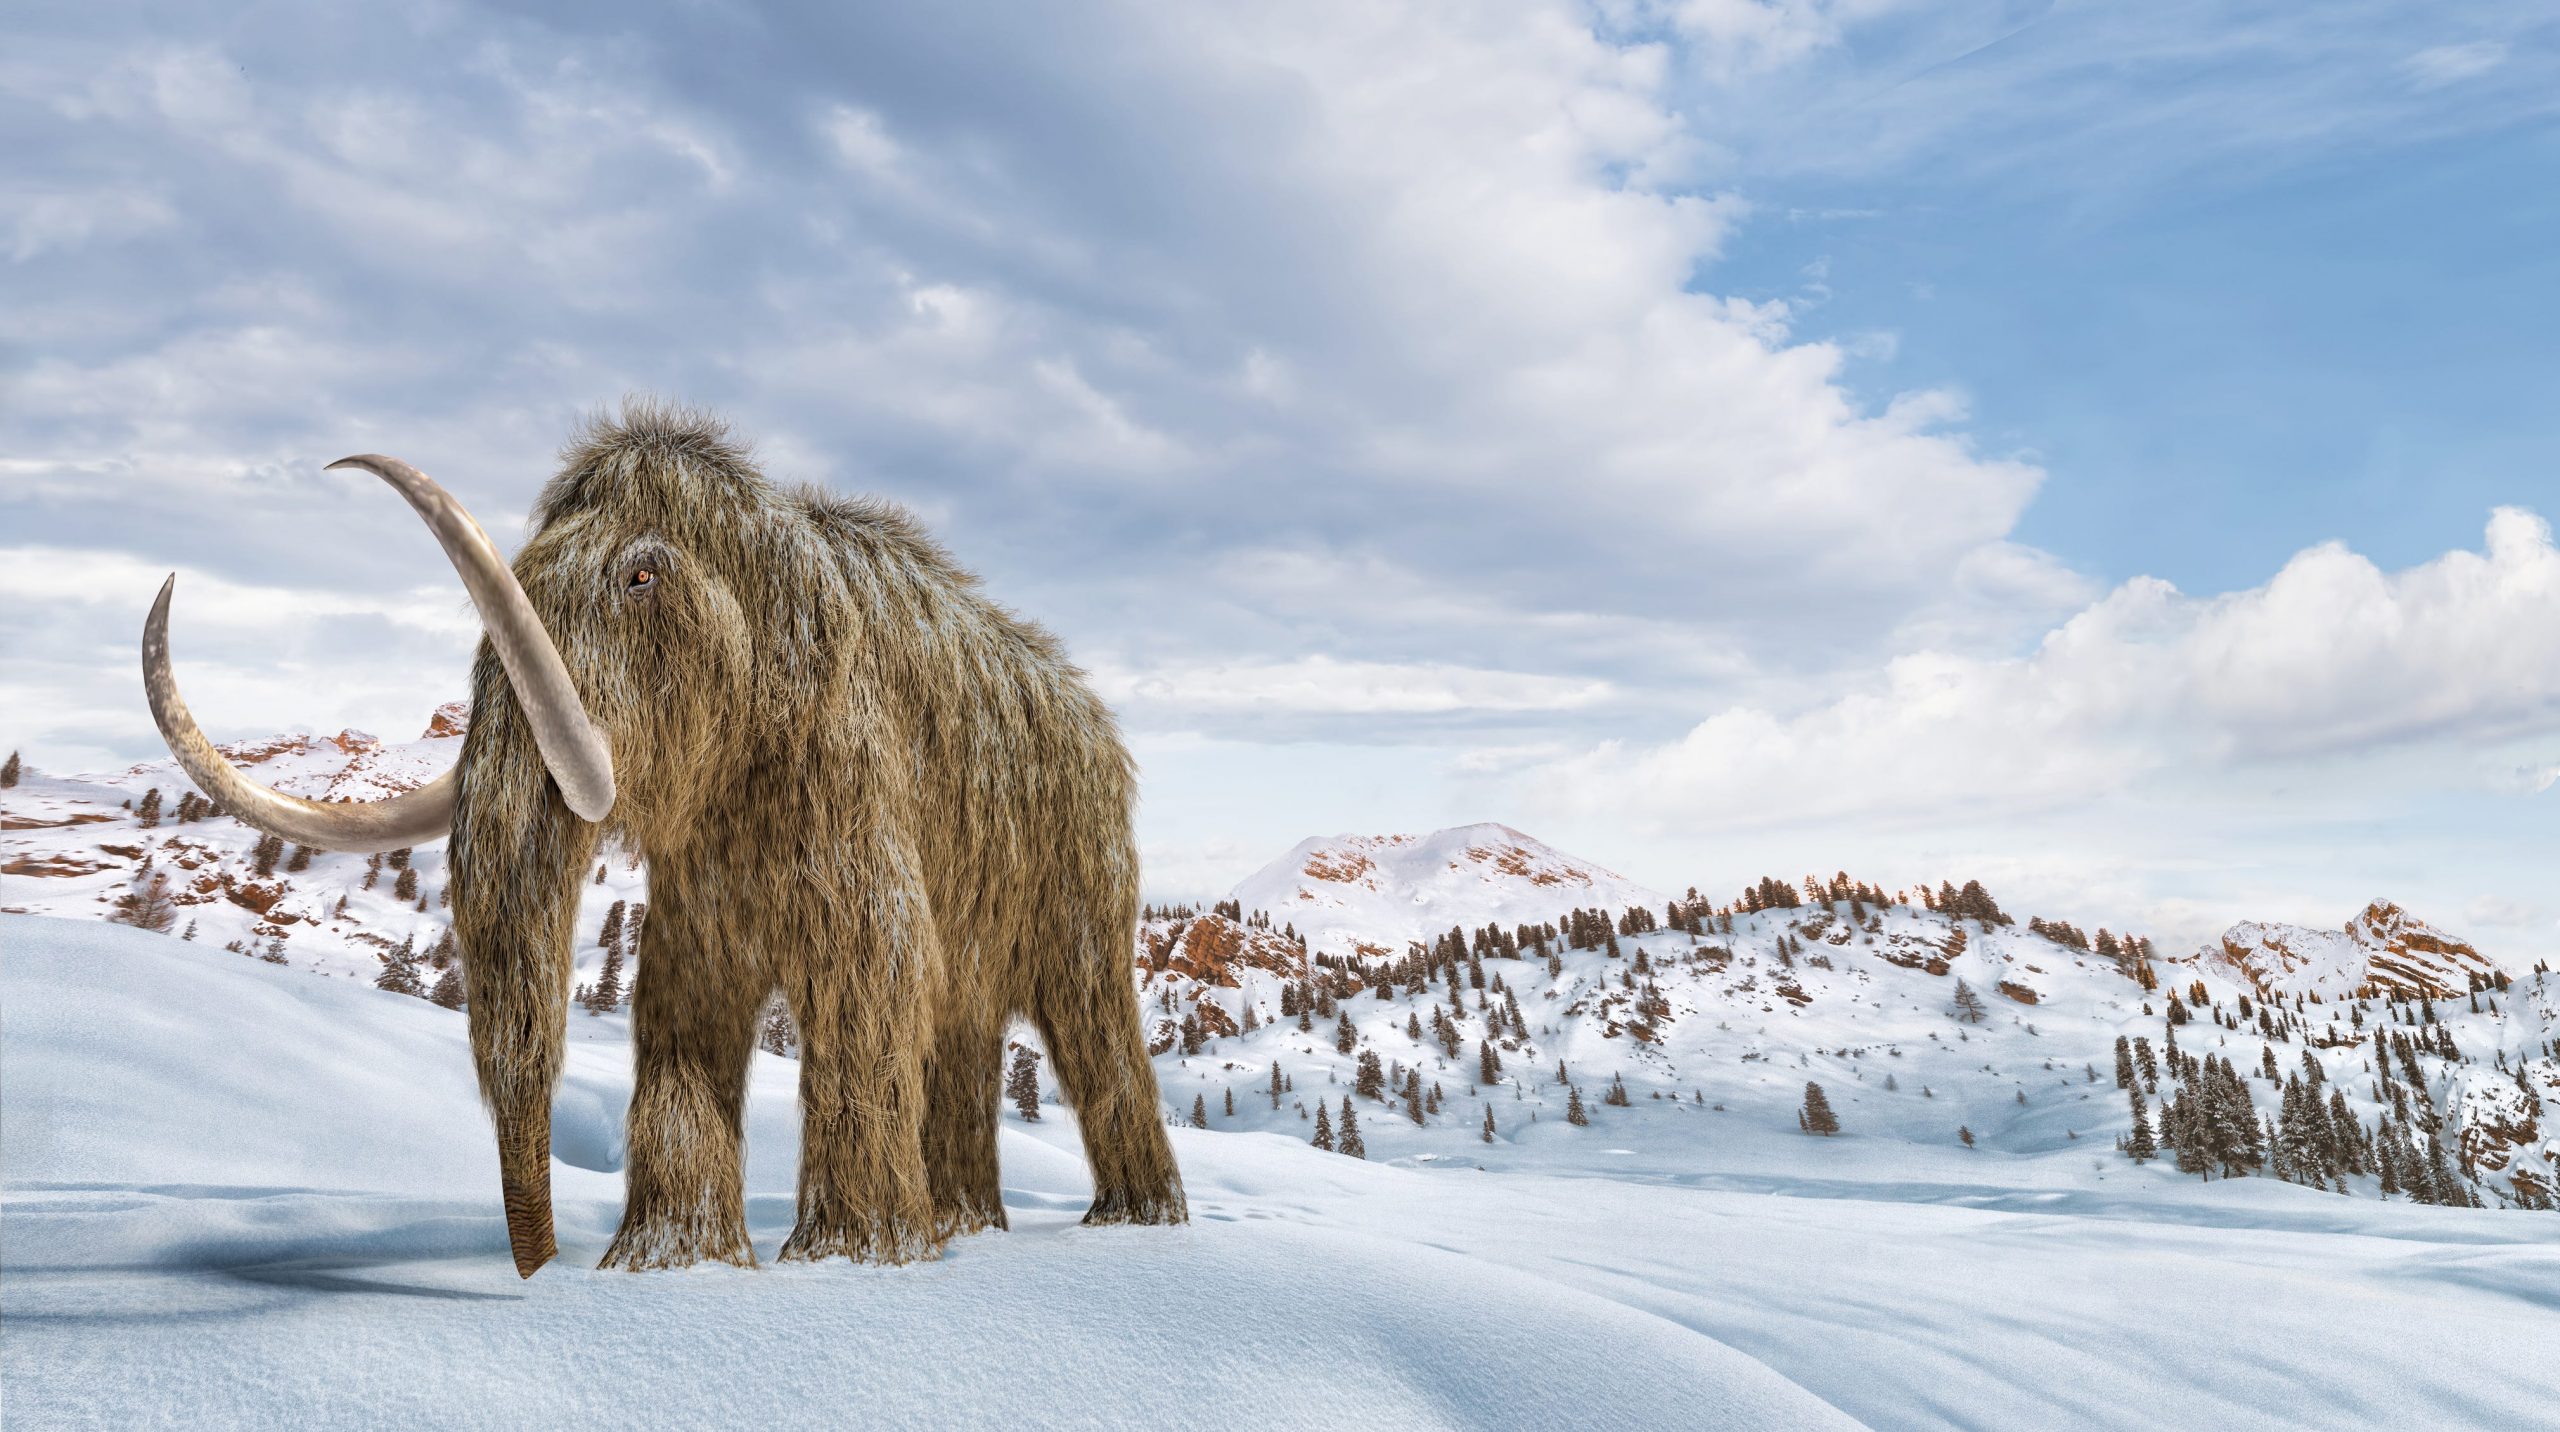 Woolly mammoth in snowy landscape